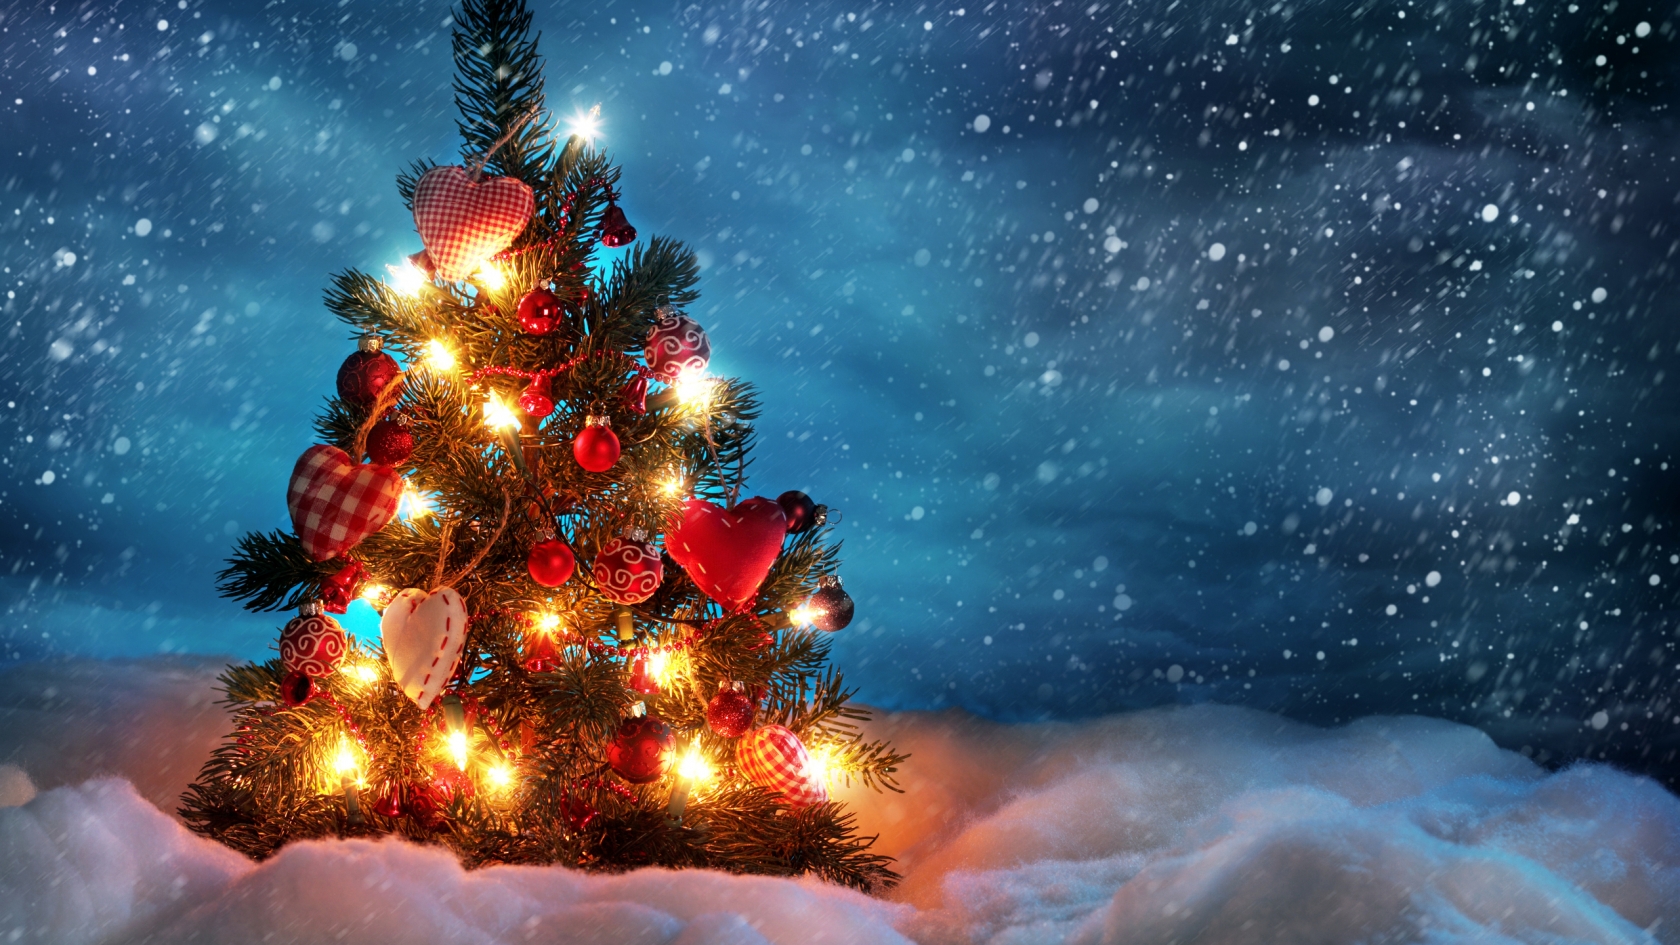 Lovely Christmas Tree for 1680 x 945 HDTV resolution